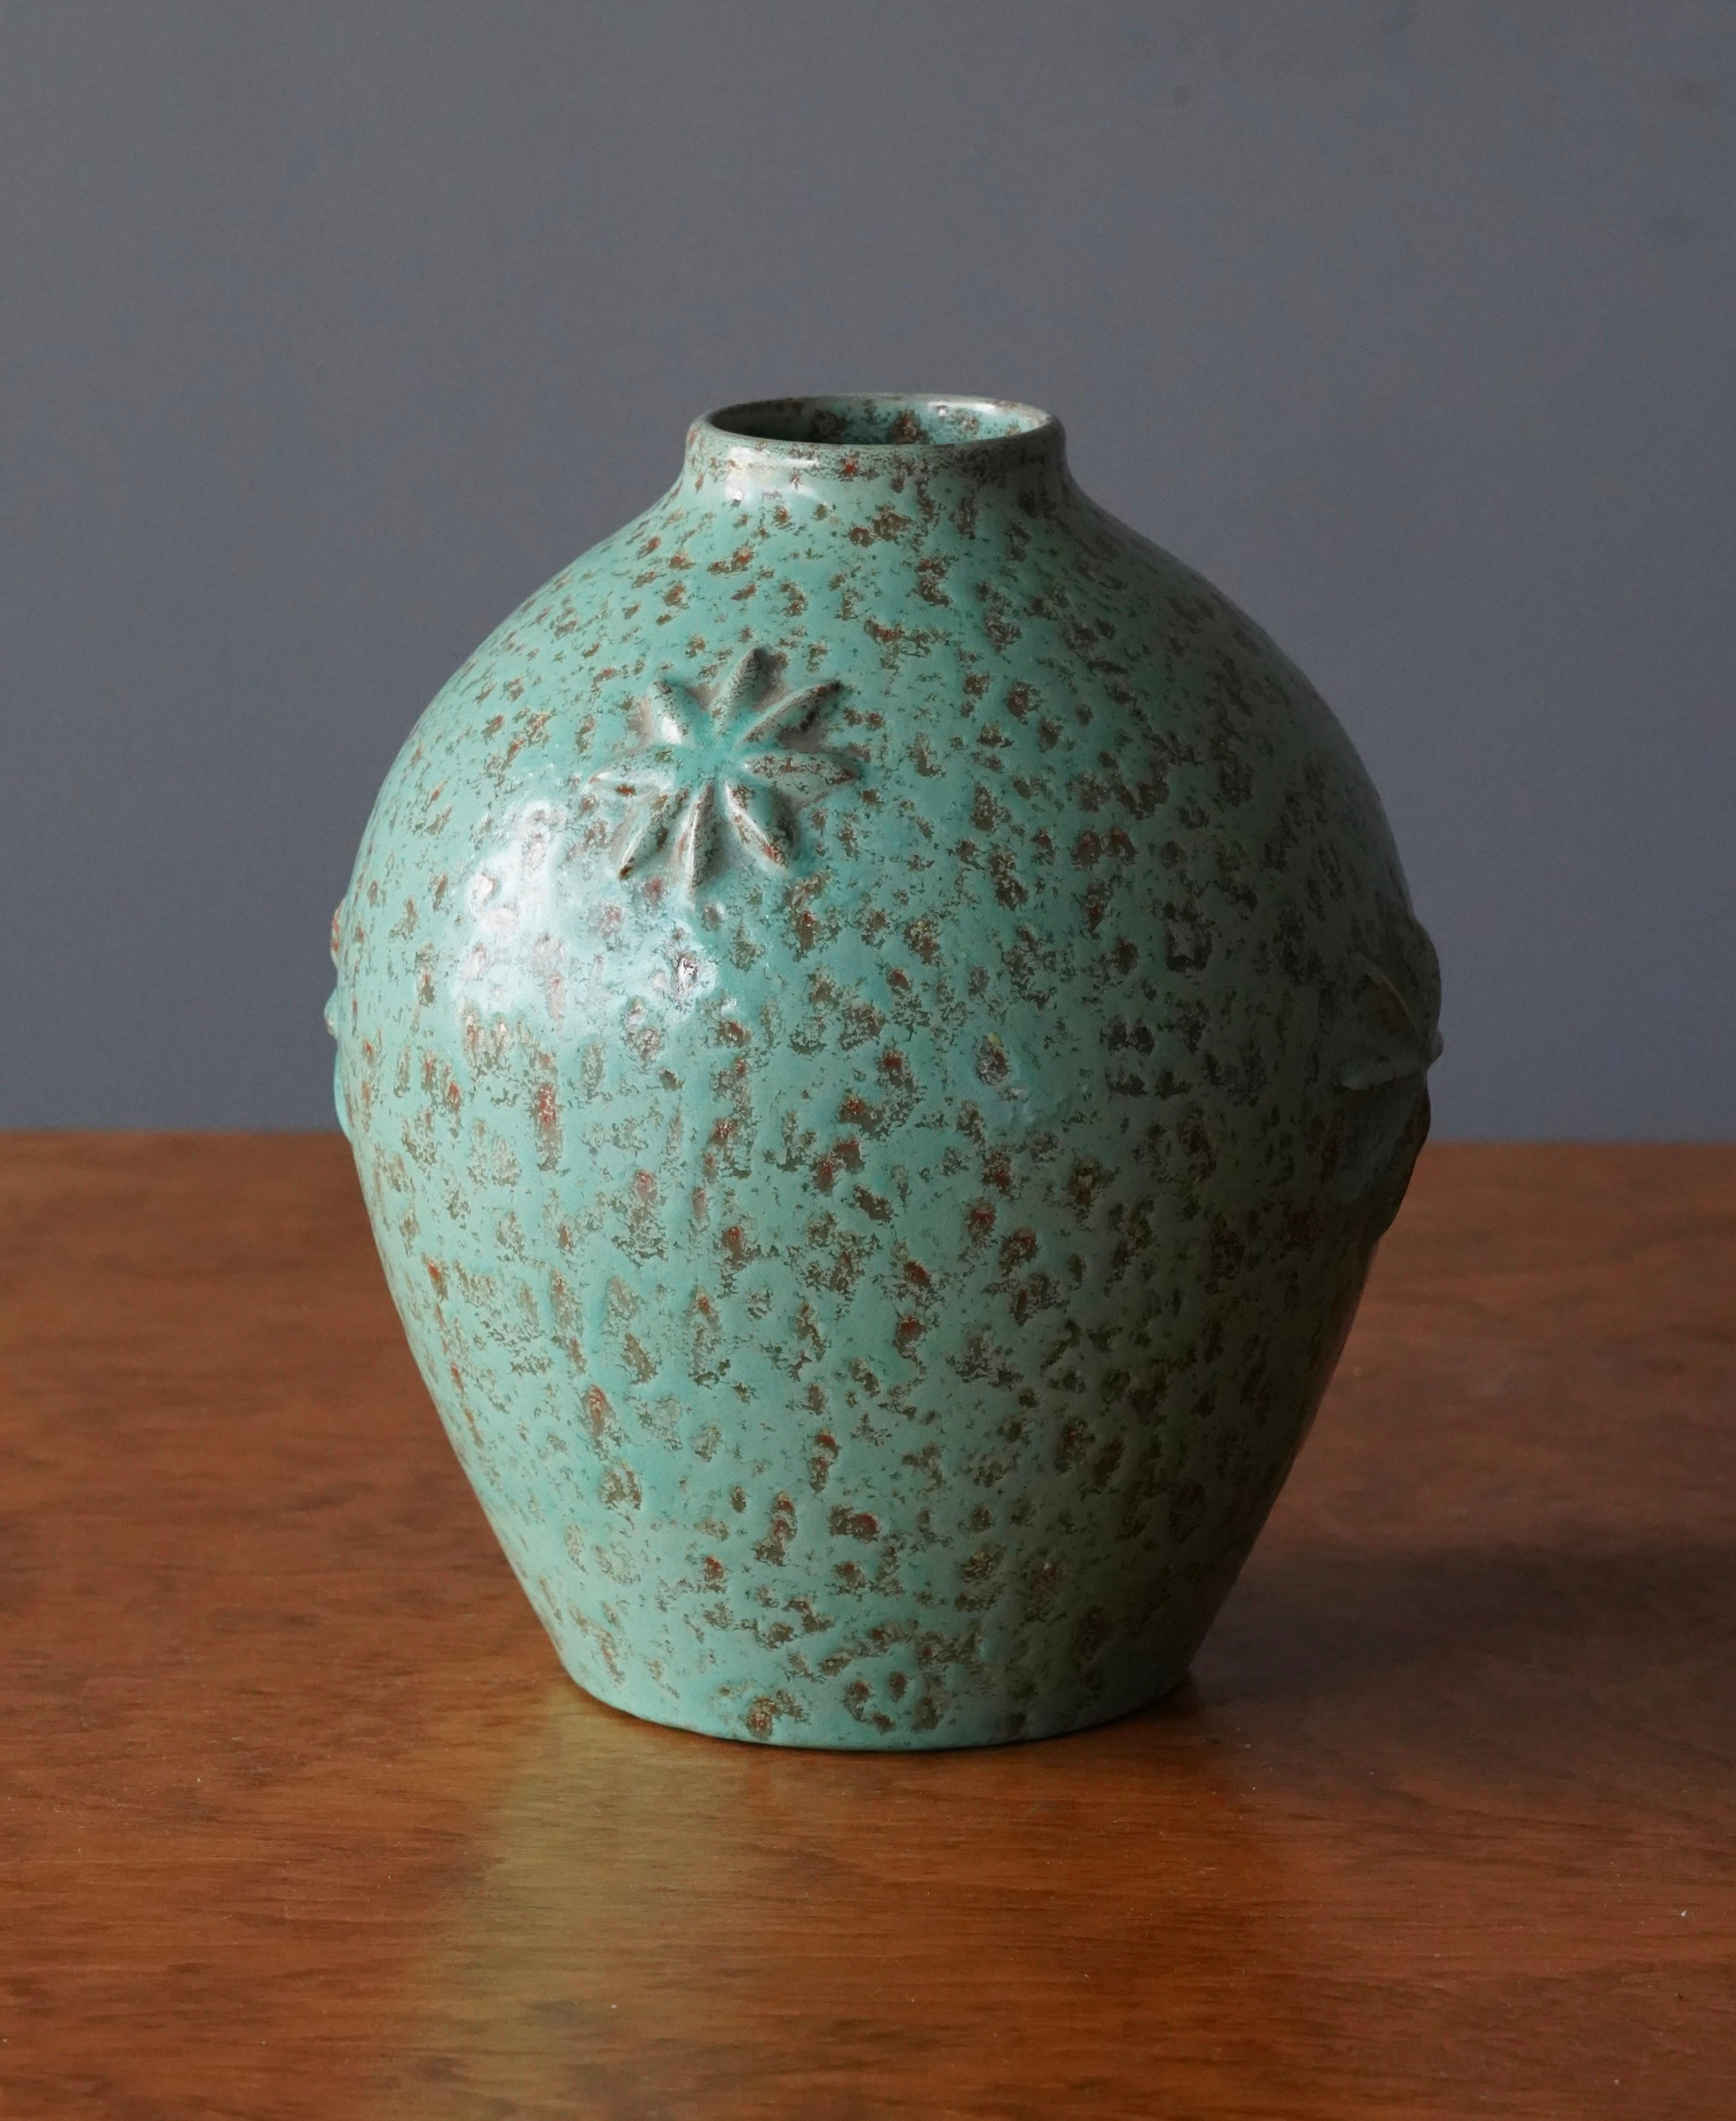 Swedish Jerk Werkmäster, Vase, Glazed Green Ceramic, Nittsjö, Sweden, 1940s